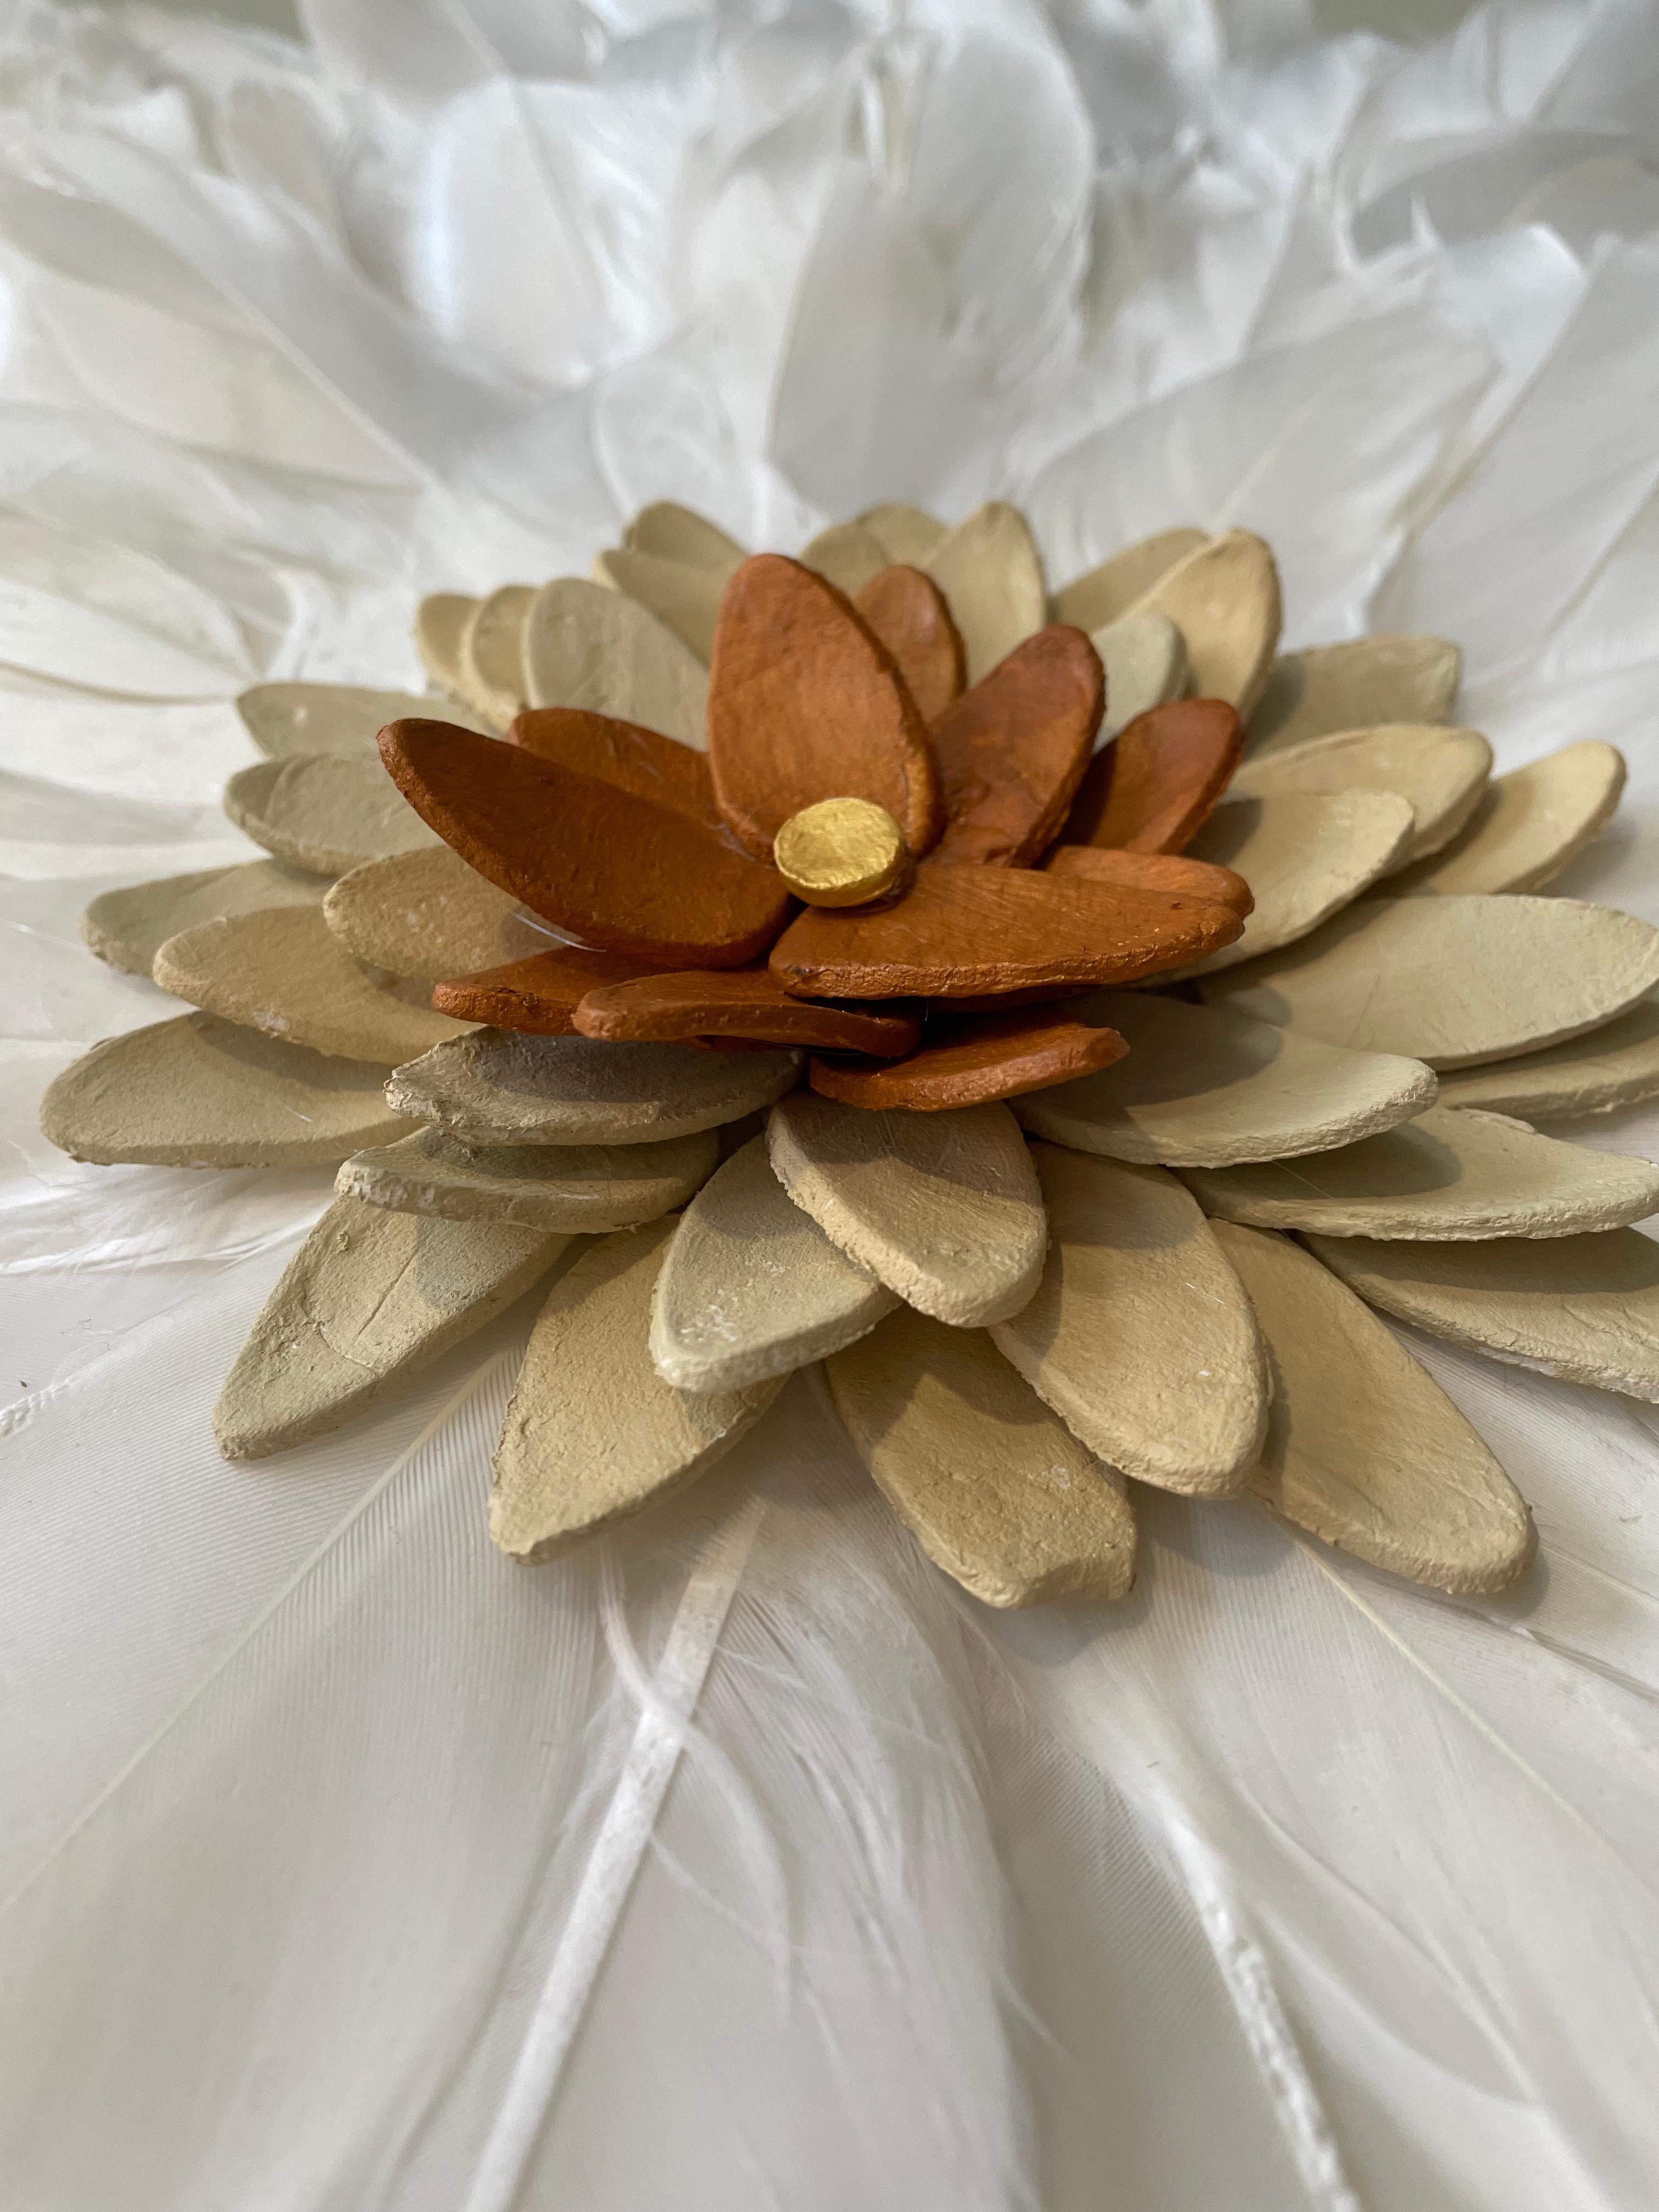 Flores 1 - composition florale en plumes et argile inspirée de la nature en 3D dans une boîte en plexiglas - Contemporain Mixed Media Art par Marie Laforey